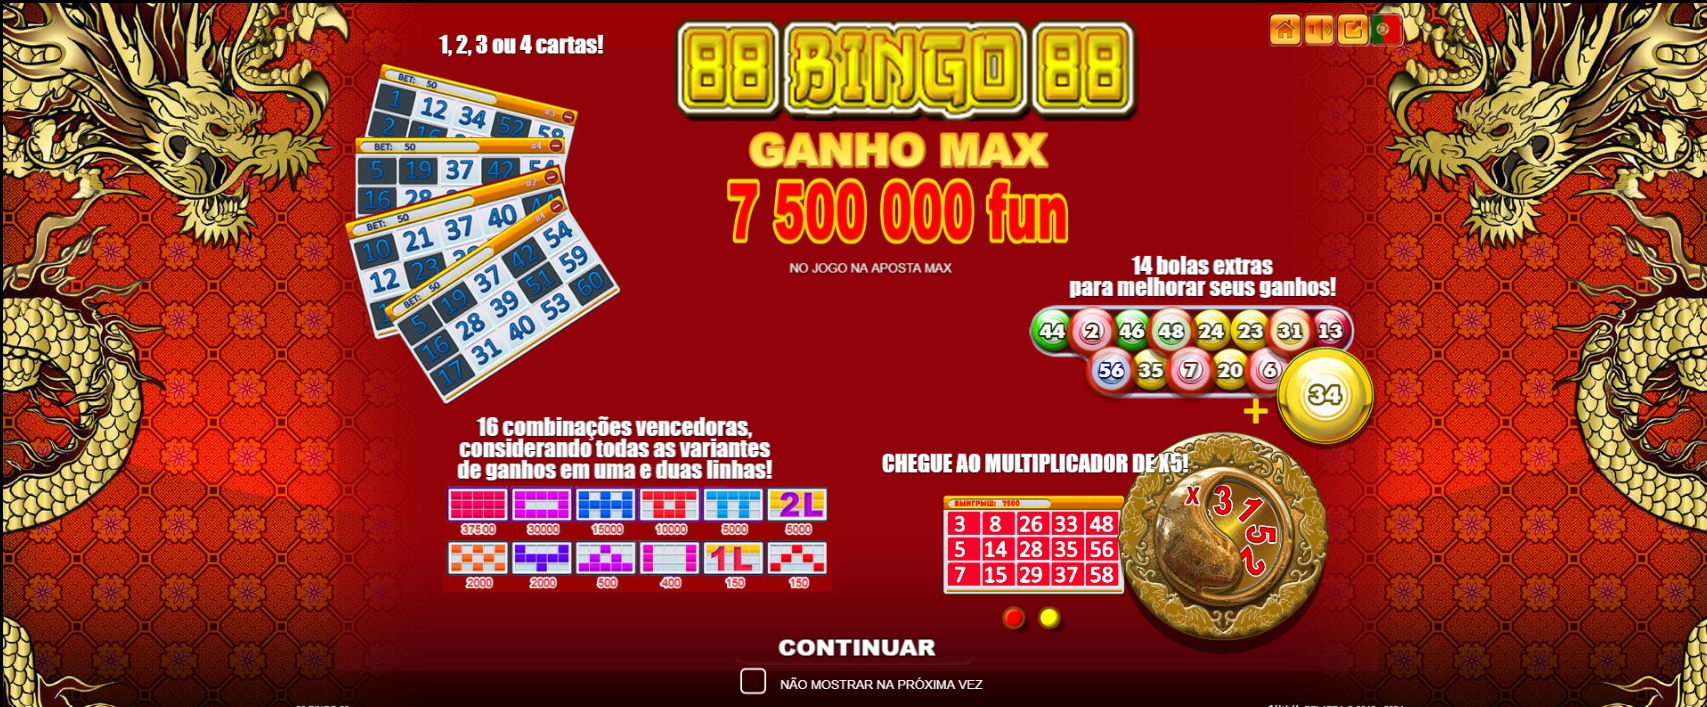 Os melhores cassinos de bingo online 3